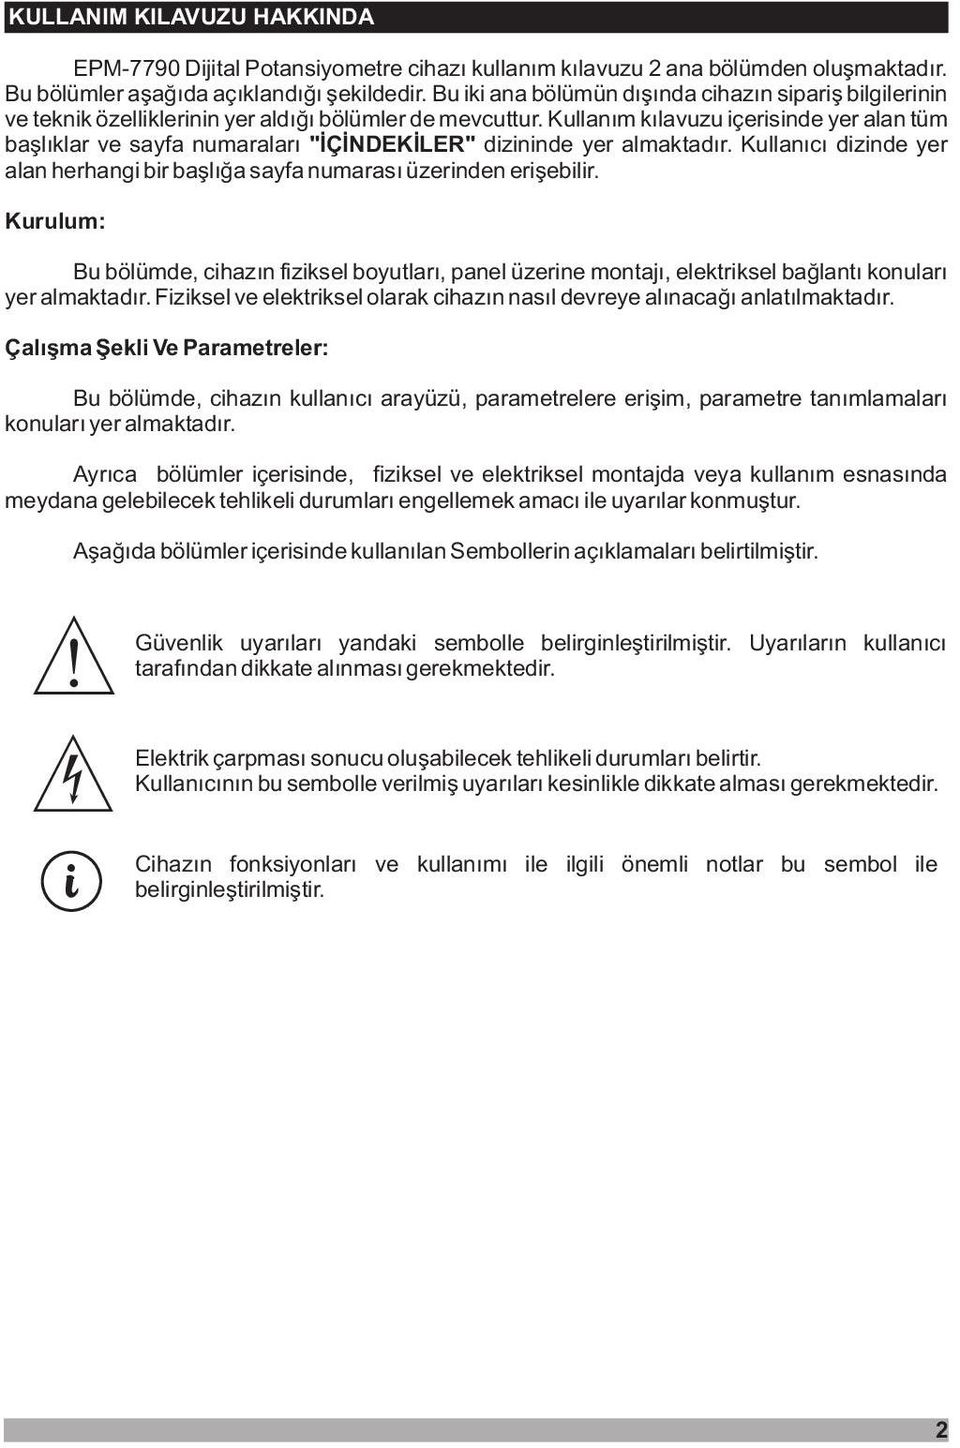 Kullaným kýlavuzu içerisinde yer alan tüm baþlýklar ve sayfa numaralarý "ÝÇÝNDEKÝLER" dizininde yer almaktadýr. Kullanýcý dizinde yer alan herhangi bir baþlýða sayfa numarasý üzerinden eriþebilir.